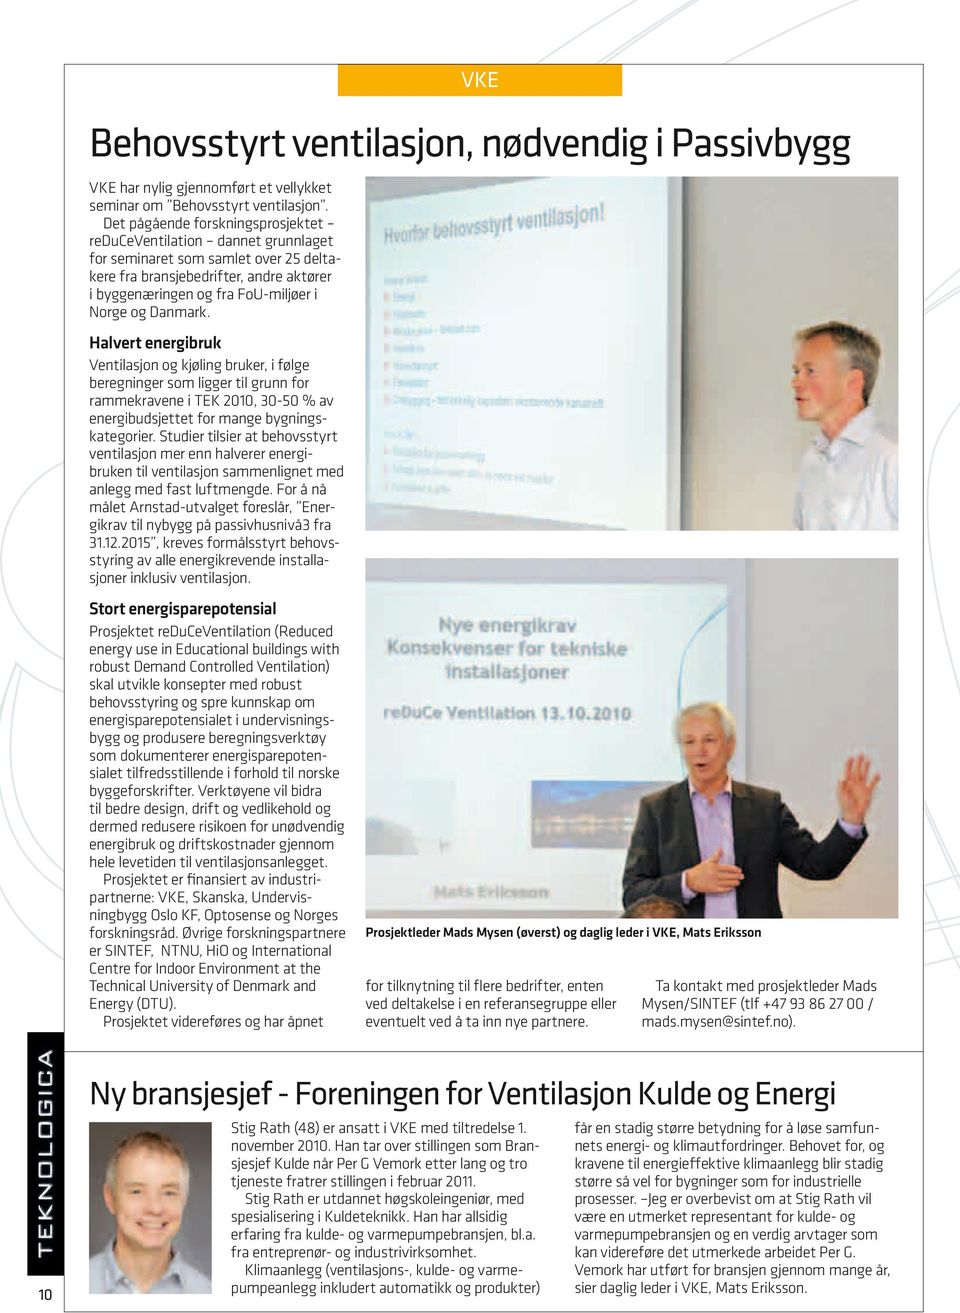 Danmark. Halvert energibruk Ventilasjon og kjøling bruker, i følge beregninger som ligger til grunn for rammekravene i TEK 2010, 30-50 % av energibudsjettet for mange bygningskategorier.